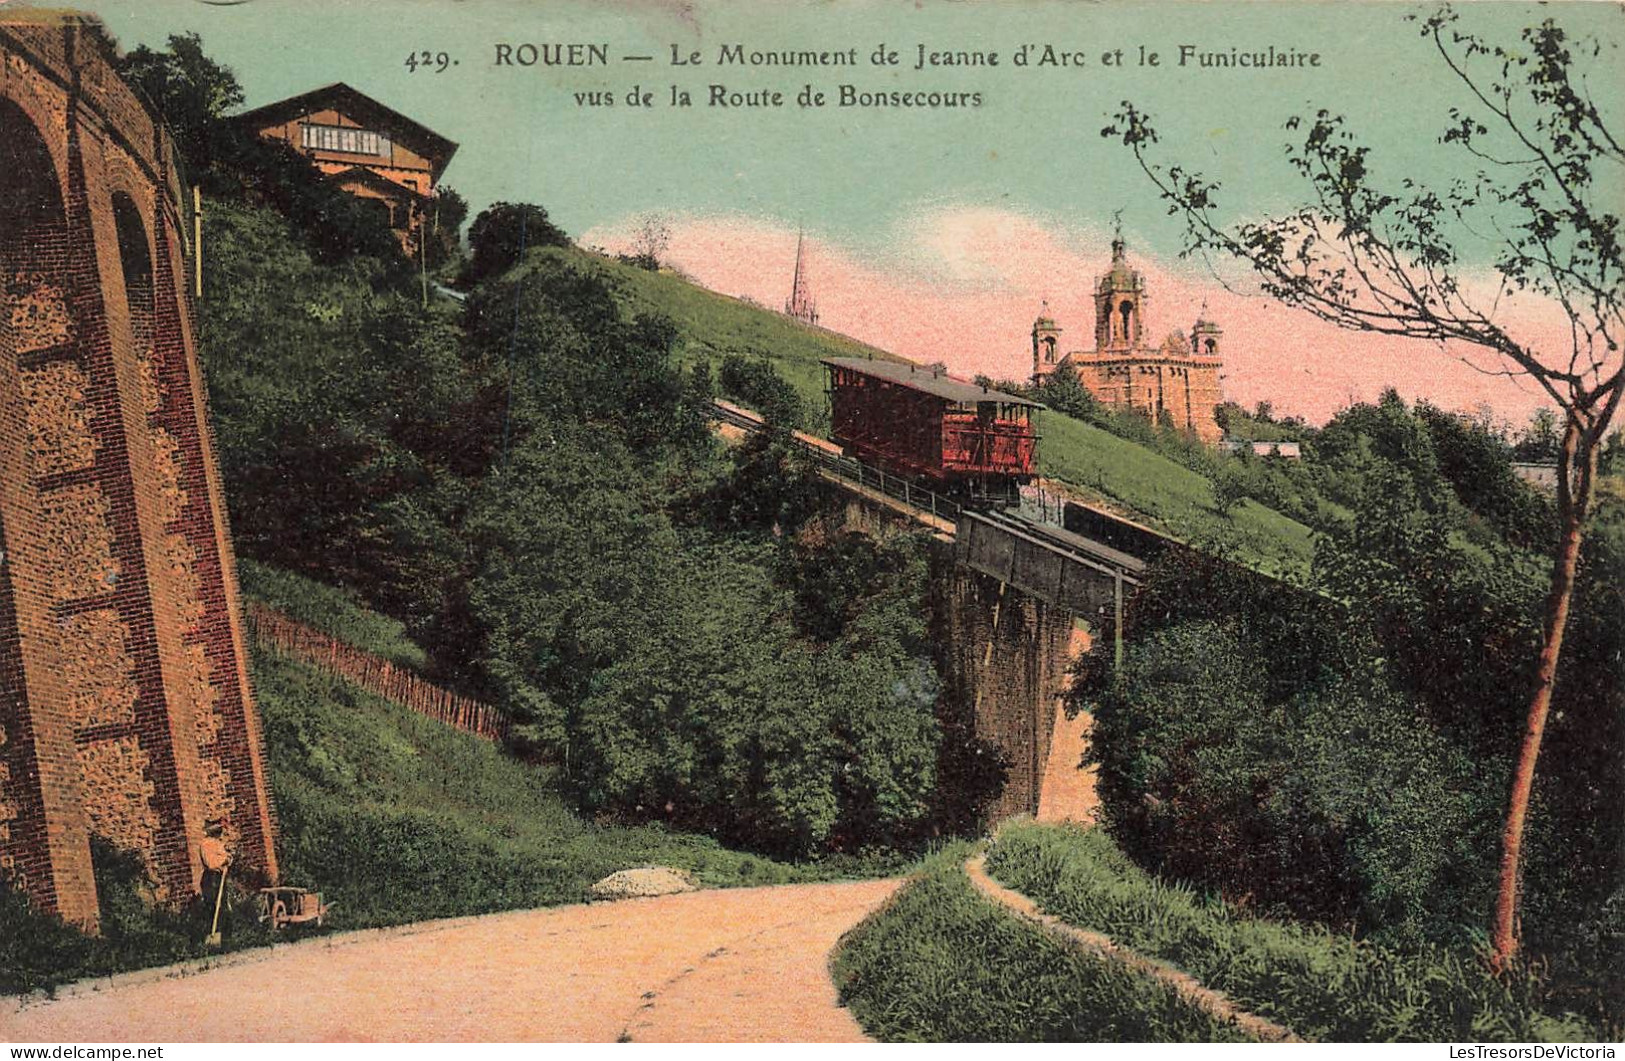 FRANCE - Rouen - Monument De Jeanne D'Arc - Funiculaire Vue De La Route De Bonsecours -Colorisé - Carte Postale Ancienne - Rouen